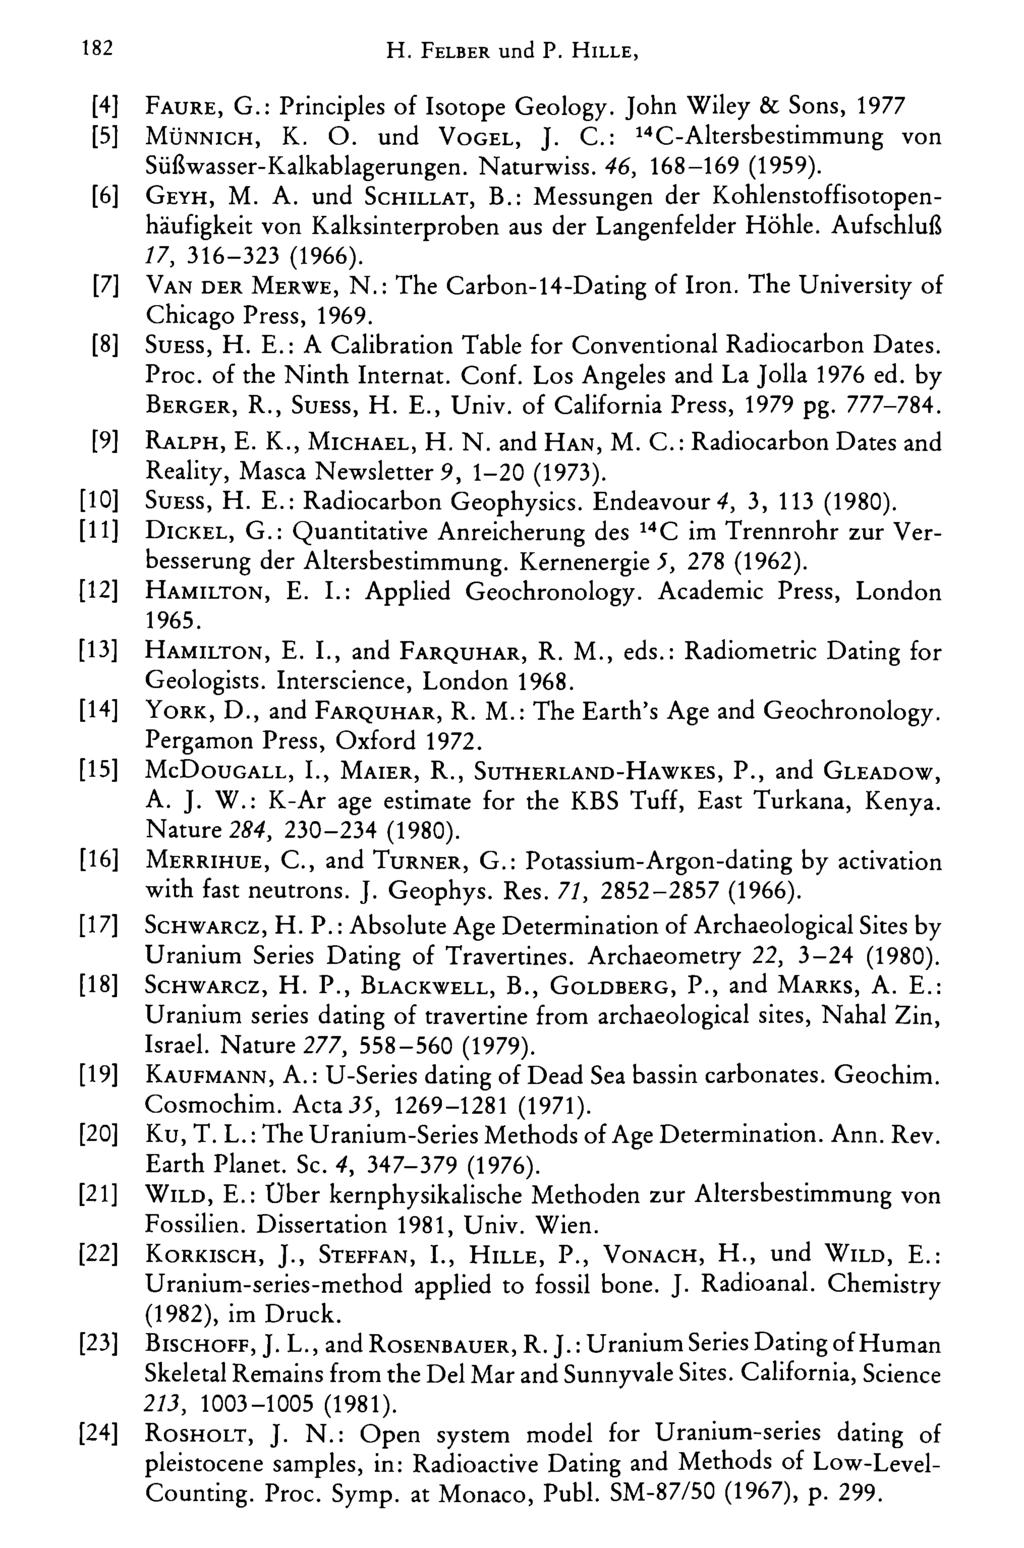 F a u r e, G.: Principles of Isotope Geology. John Wiley & Sons, 1977 M ü n n i c h, K. O. und V o g e l, J. C.: 14C-Altersbestimmung von Süßwasser-Kalkablagerungen. Naturwiss. 46, 168-169 (1959).